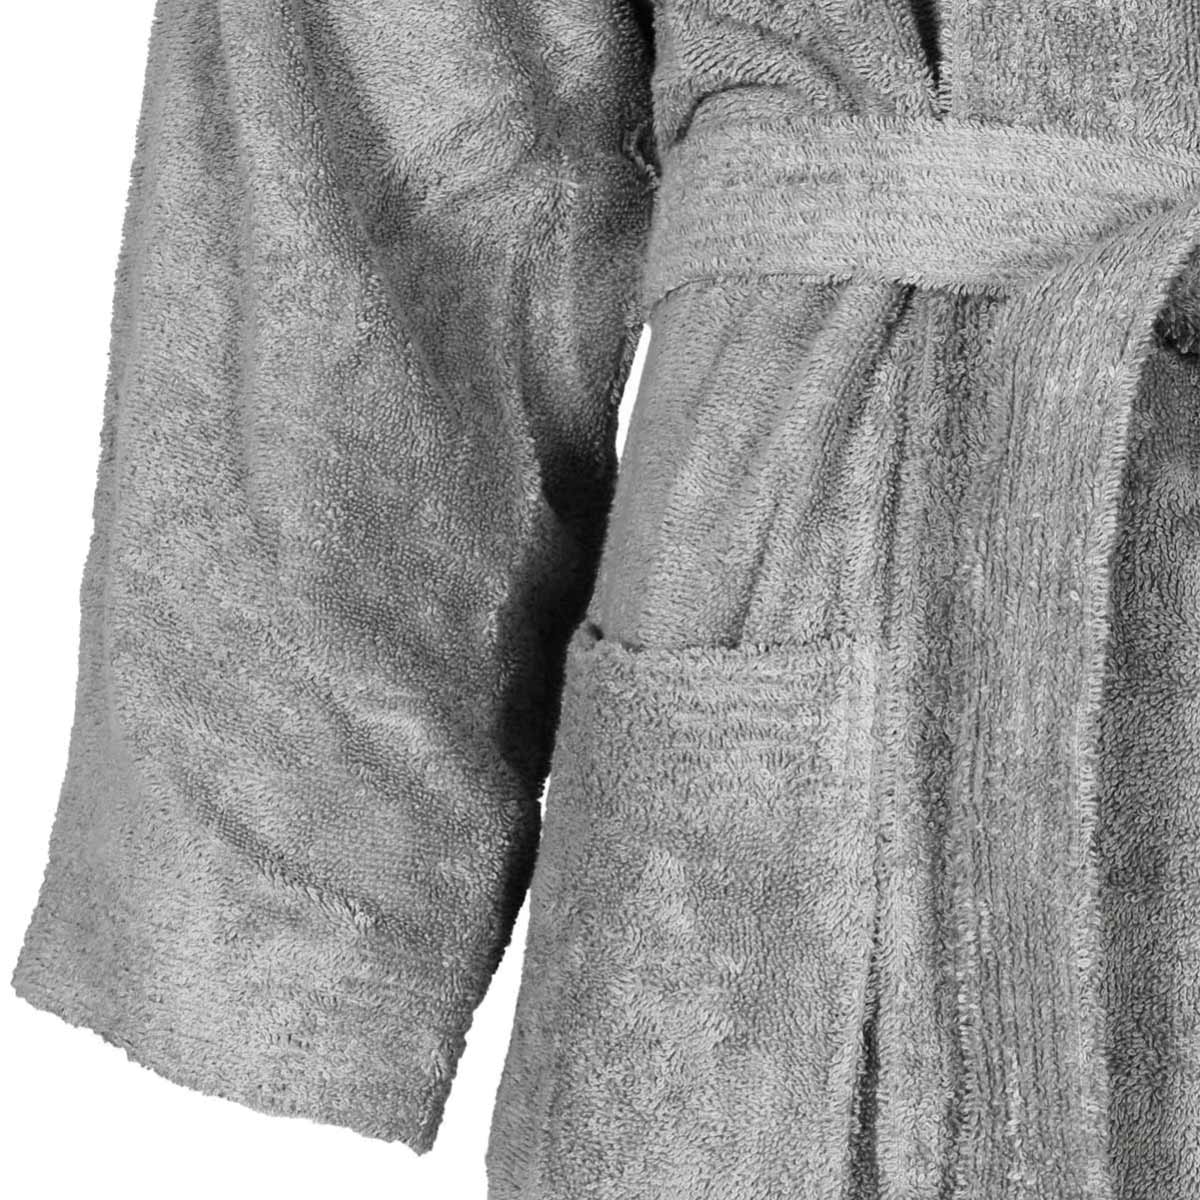 Unisex bathrobe 420gr/m² - Size XXXXL